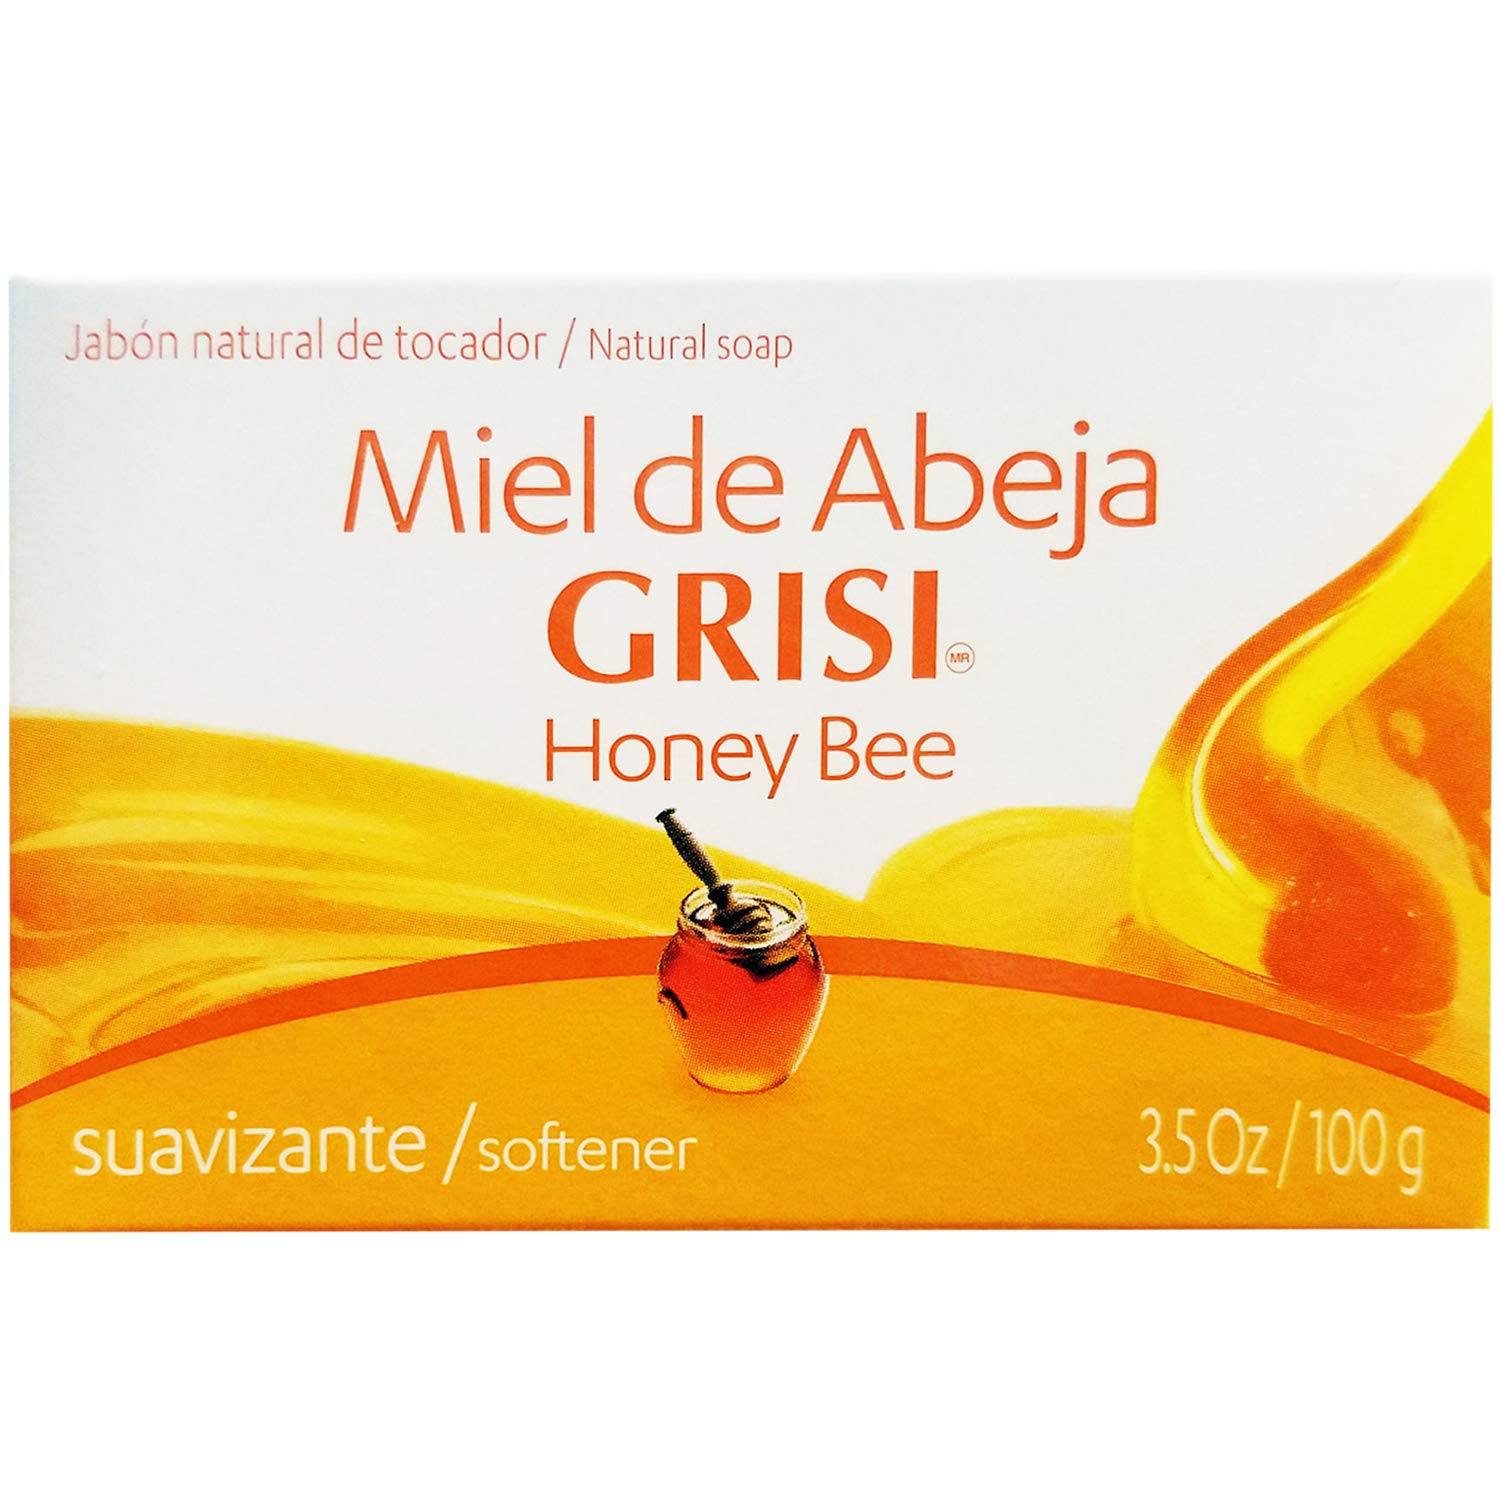 GRISI Miel de Abeja Honey Bee Bar Soap (3.5oz)